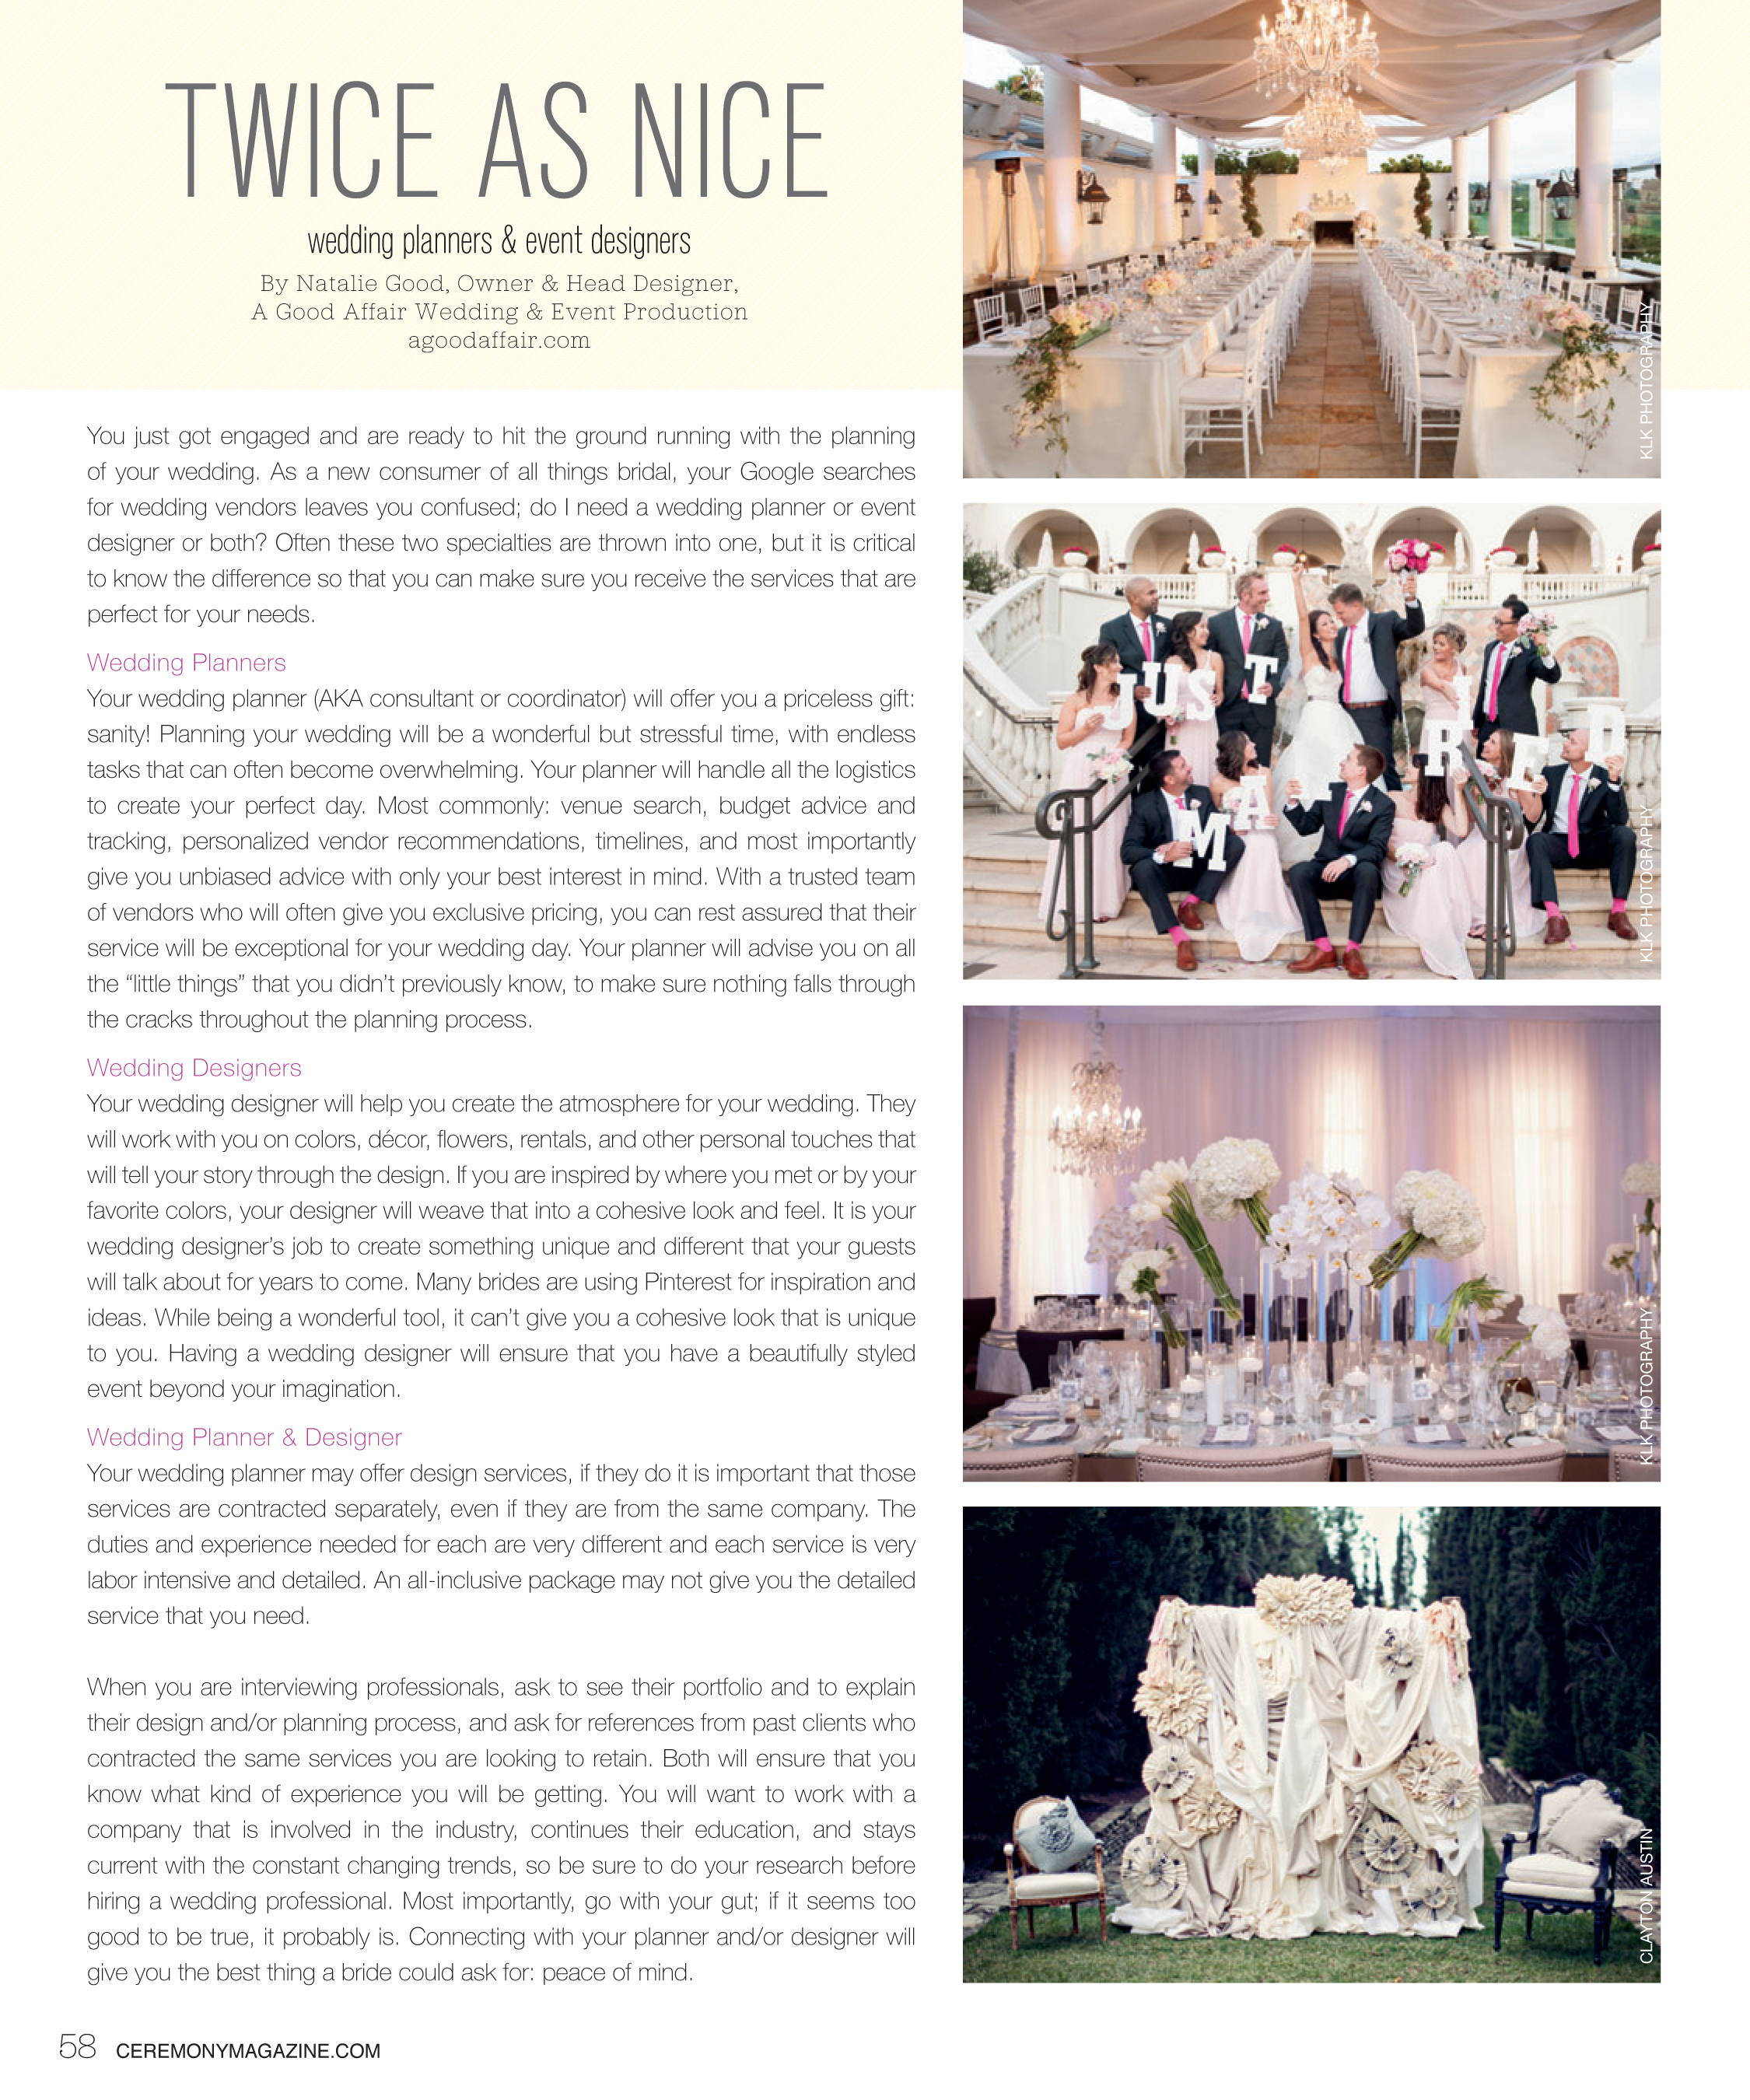 Ceremony Magazine, A Good Affair Wedding & Event Production